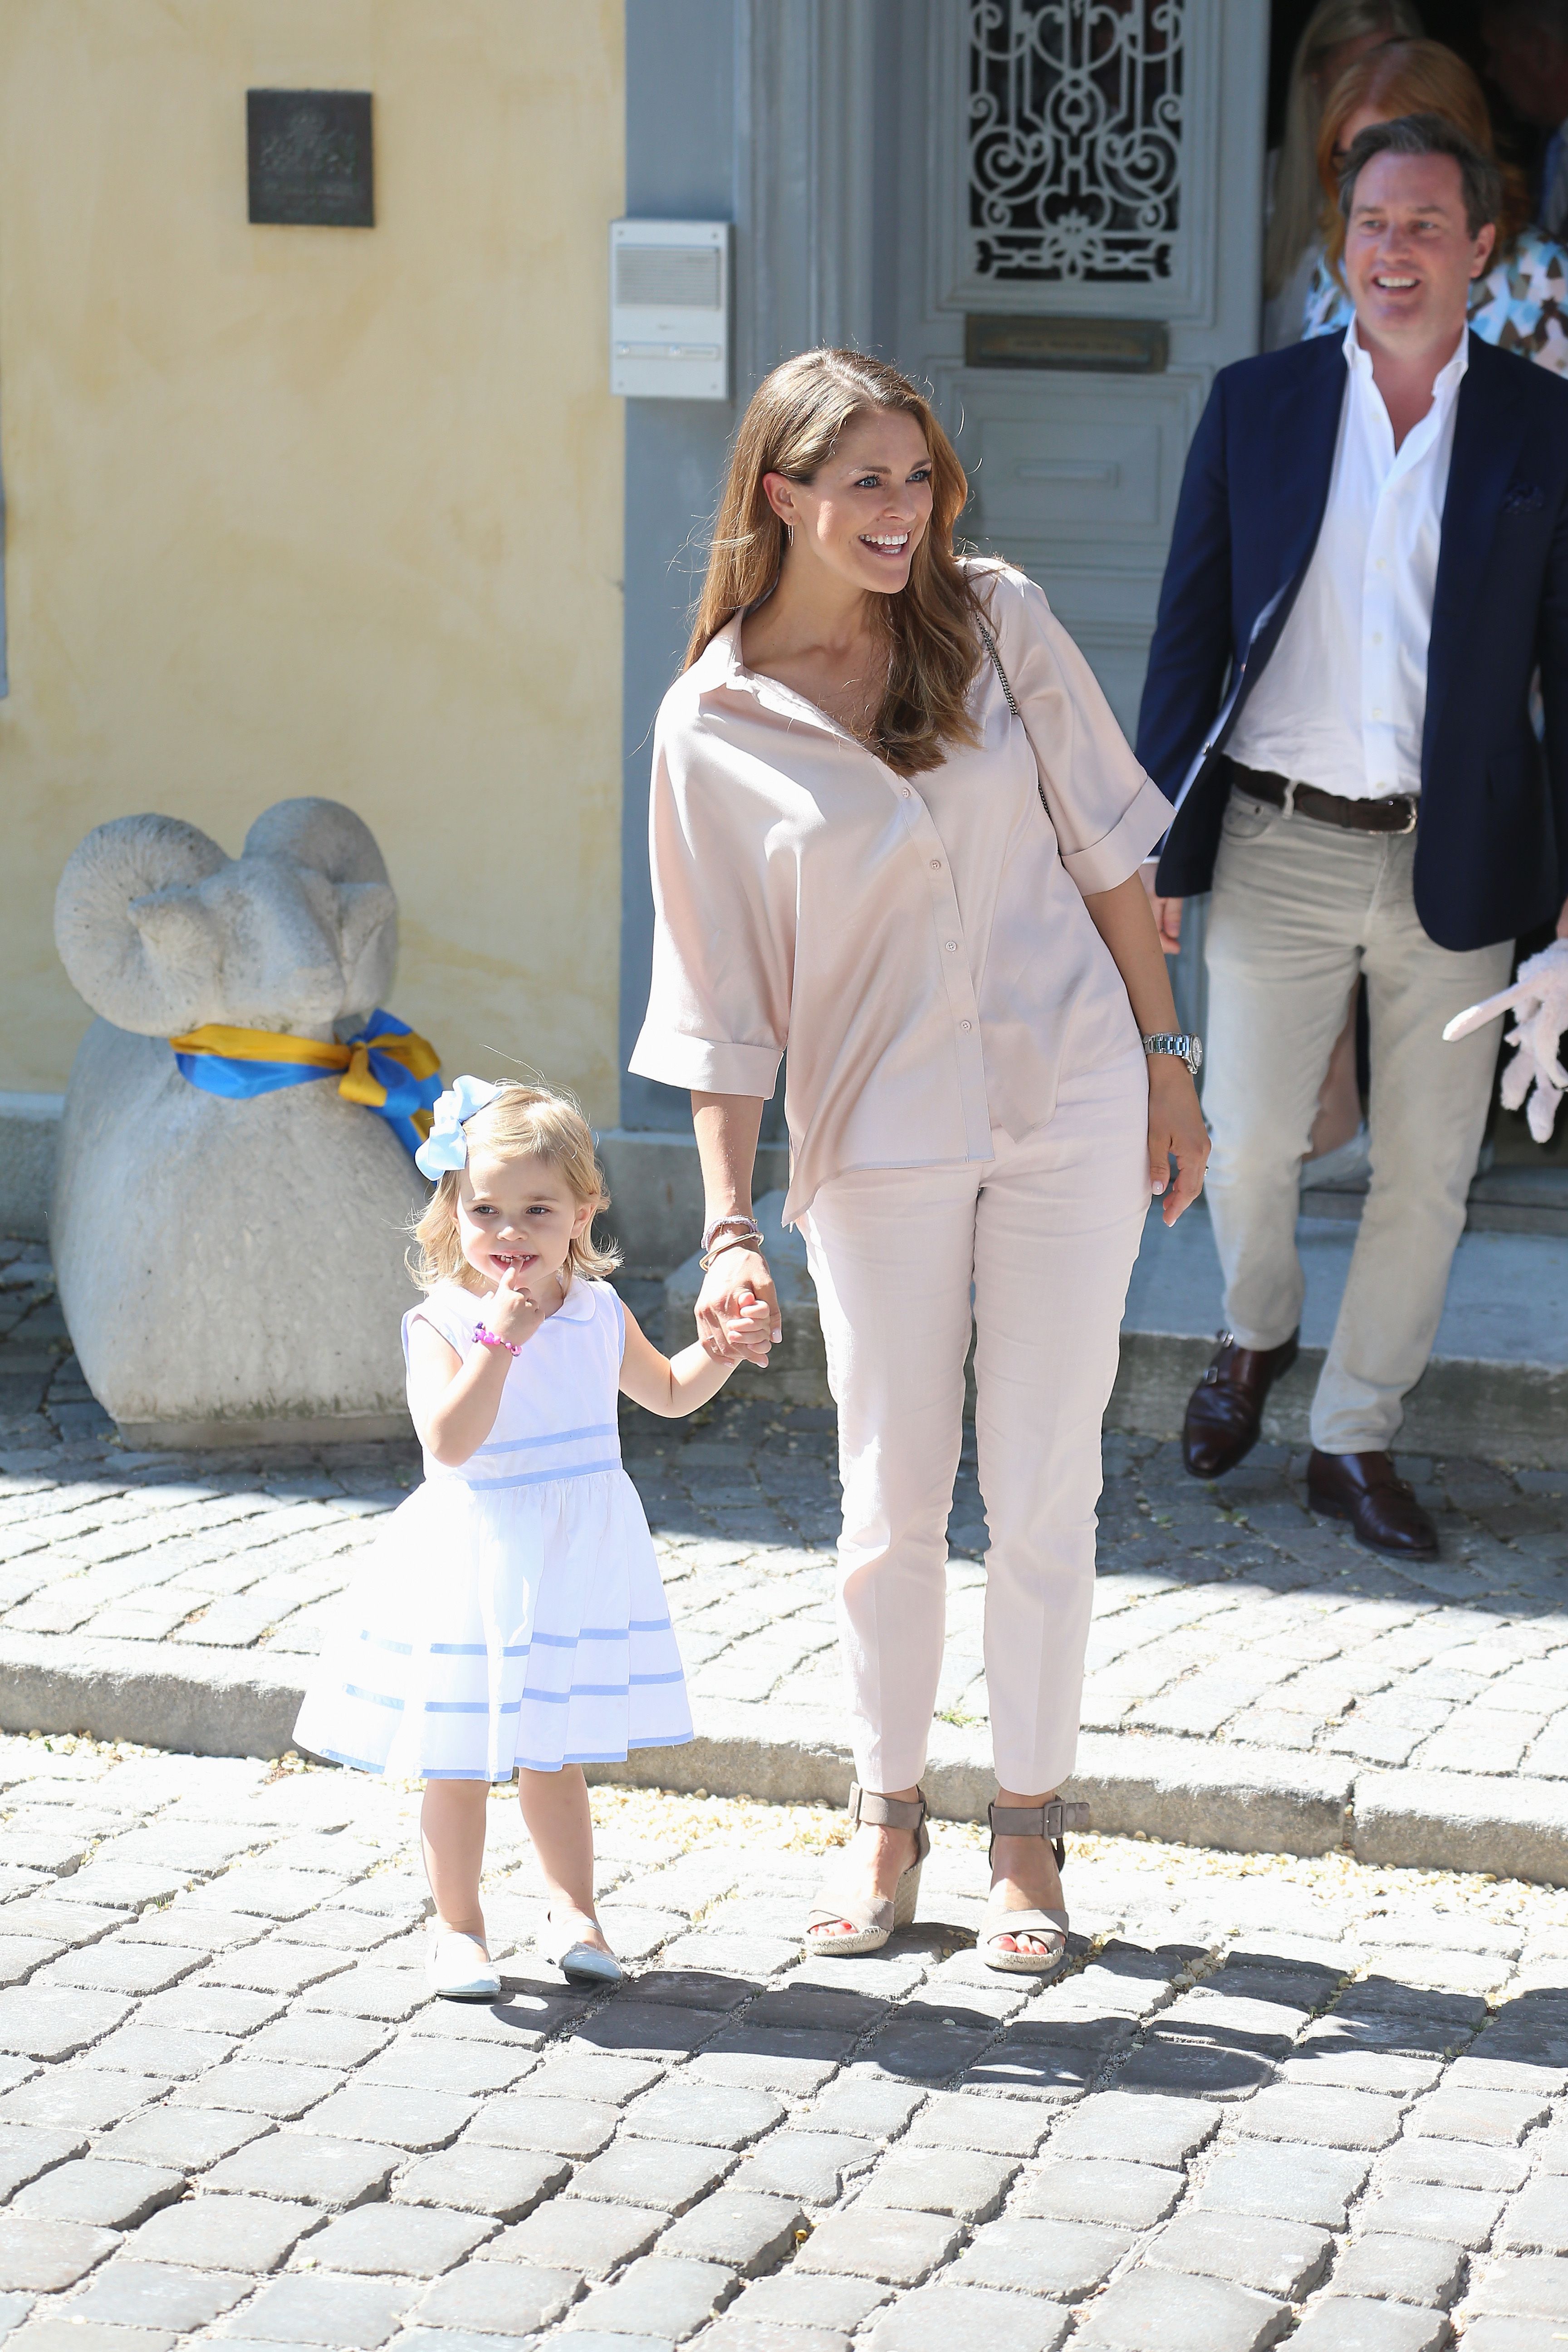 スウェーデン王室 マデレーン王女 レオノール王女の親子フォトアルバム